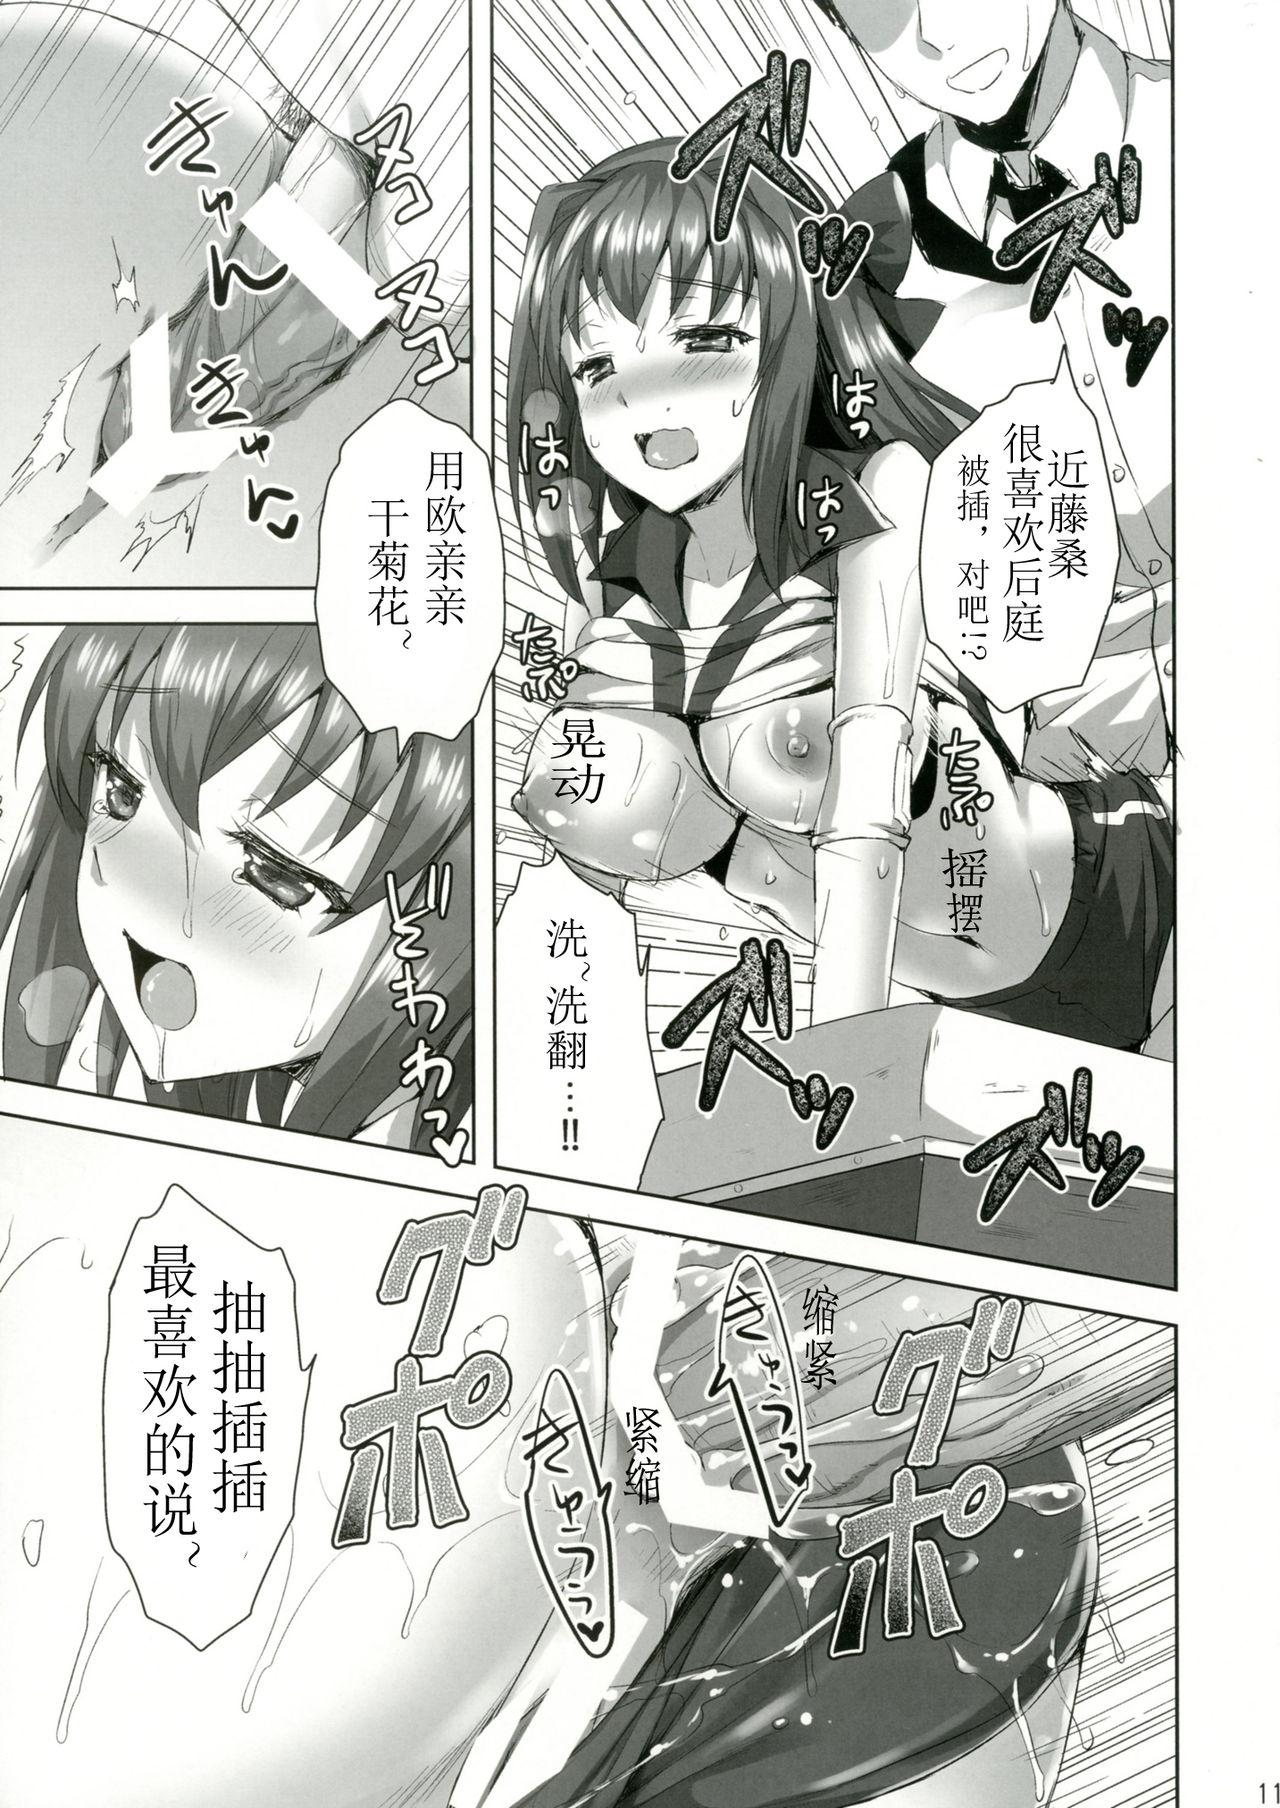 Masturbates Sensei, Choudai - Girls und panzer 19yo - Page 10